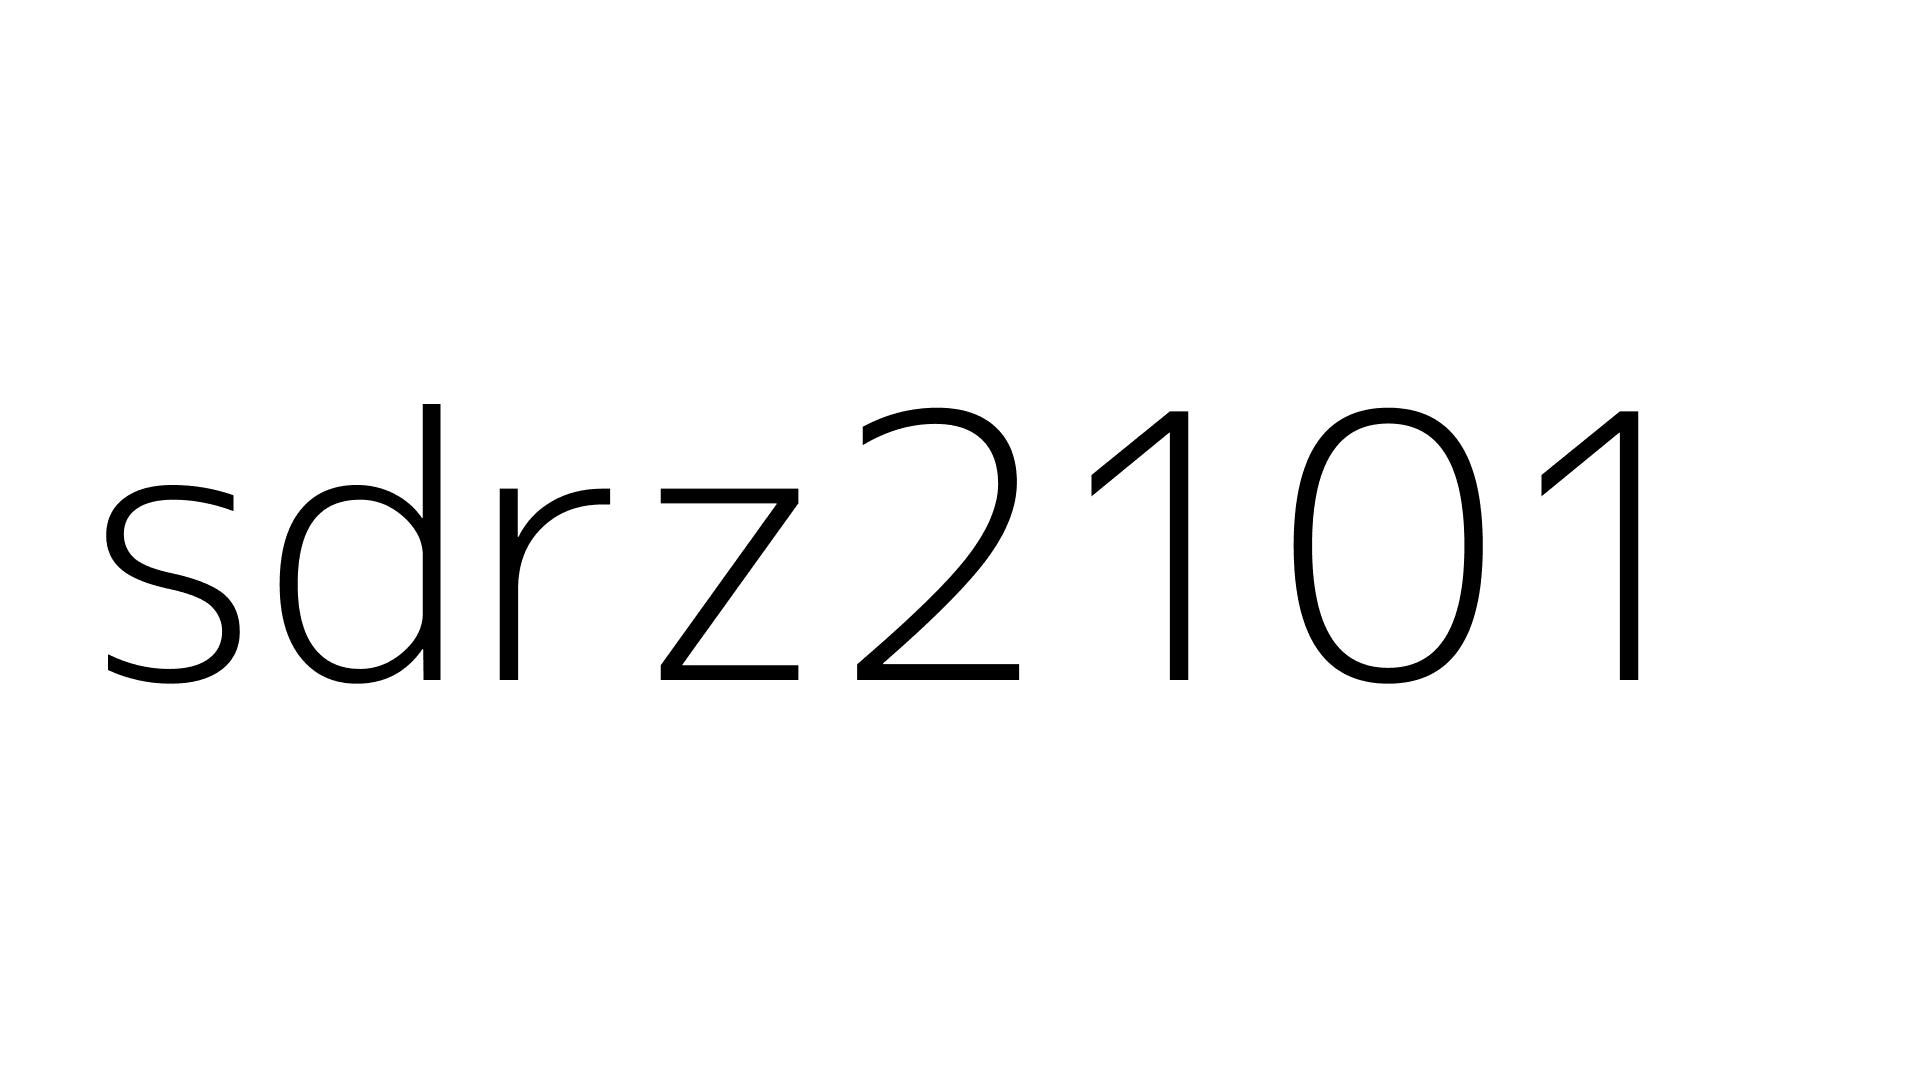 sdrz2101